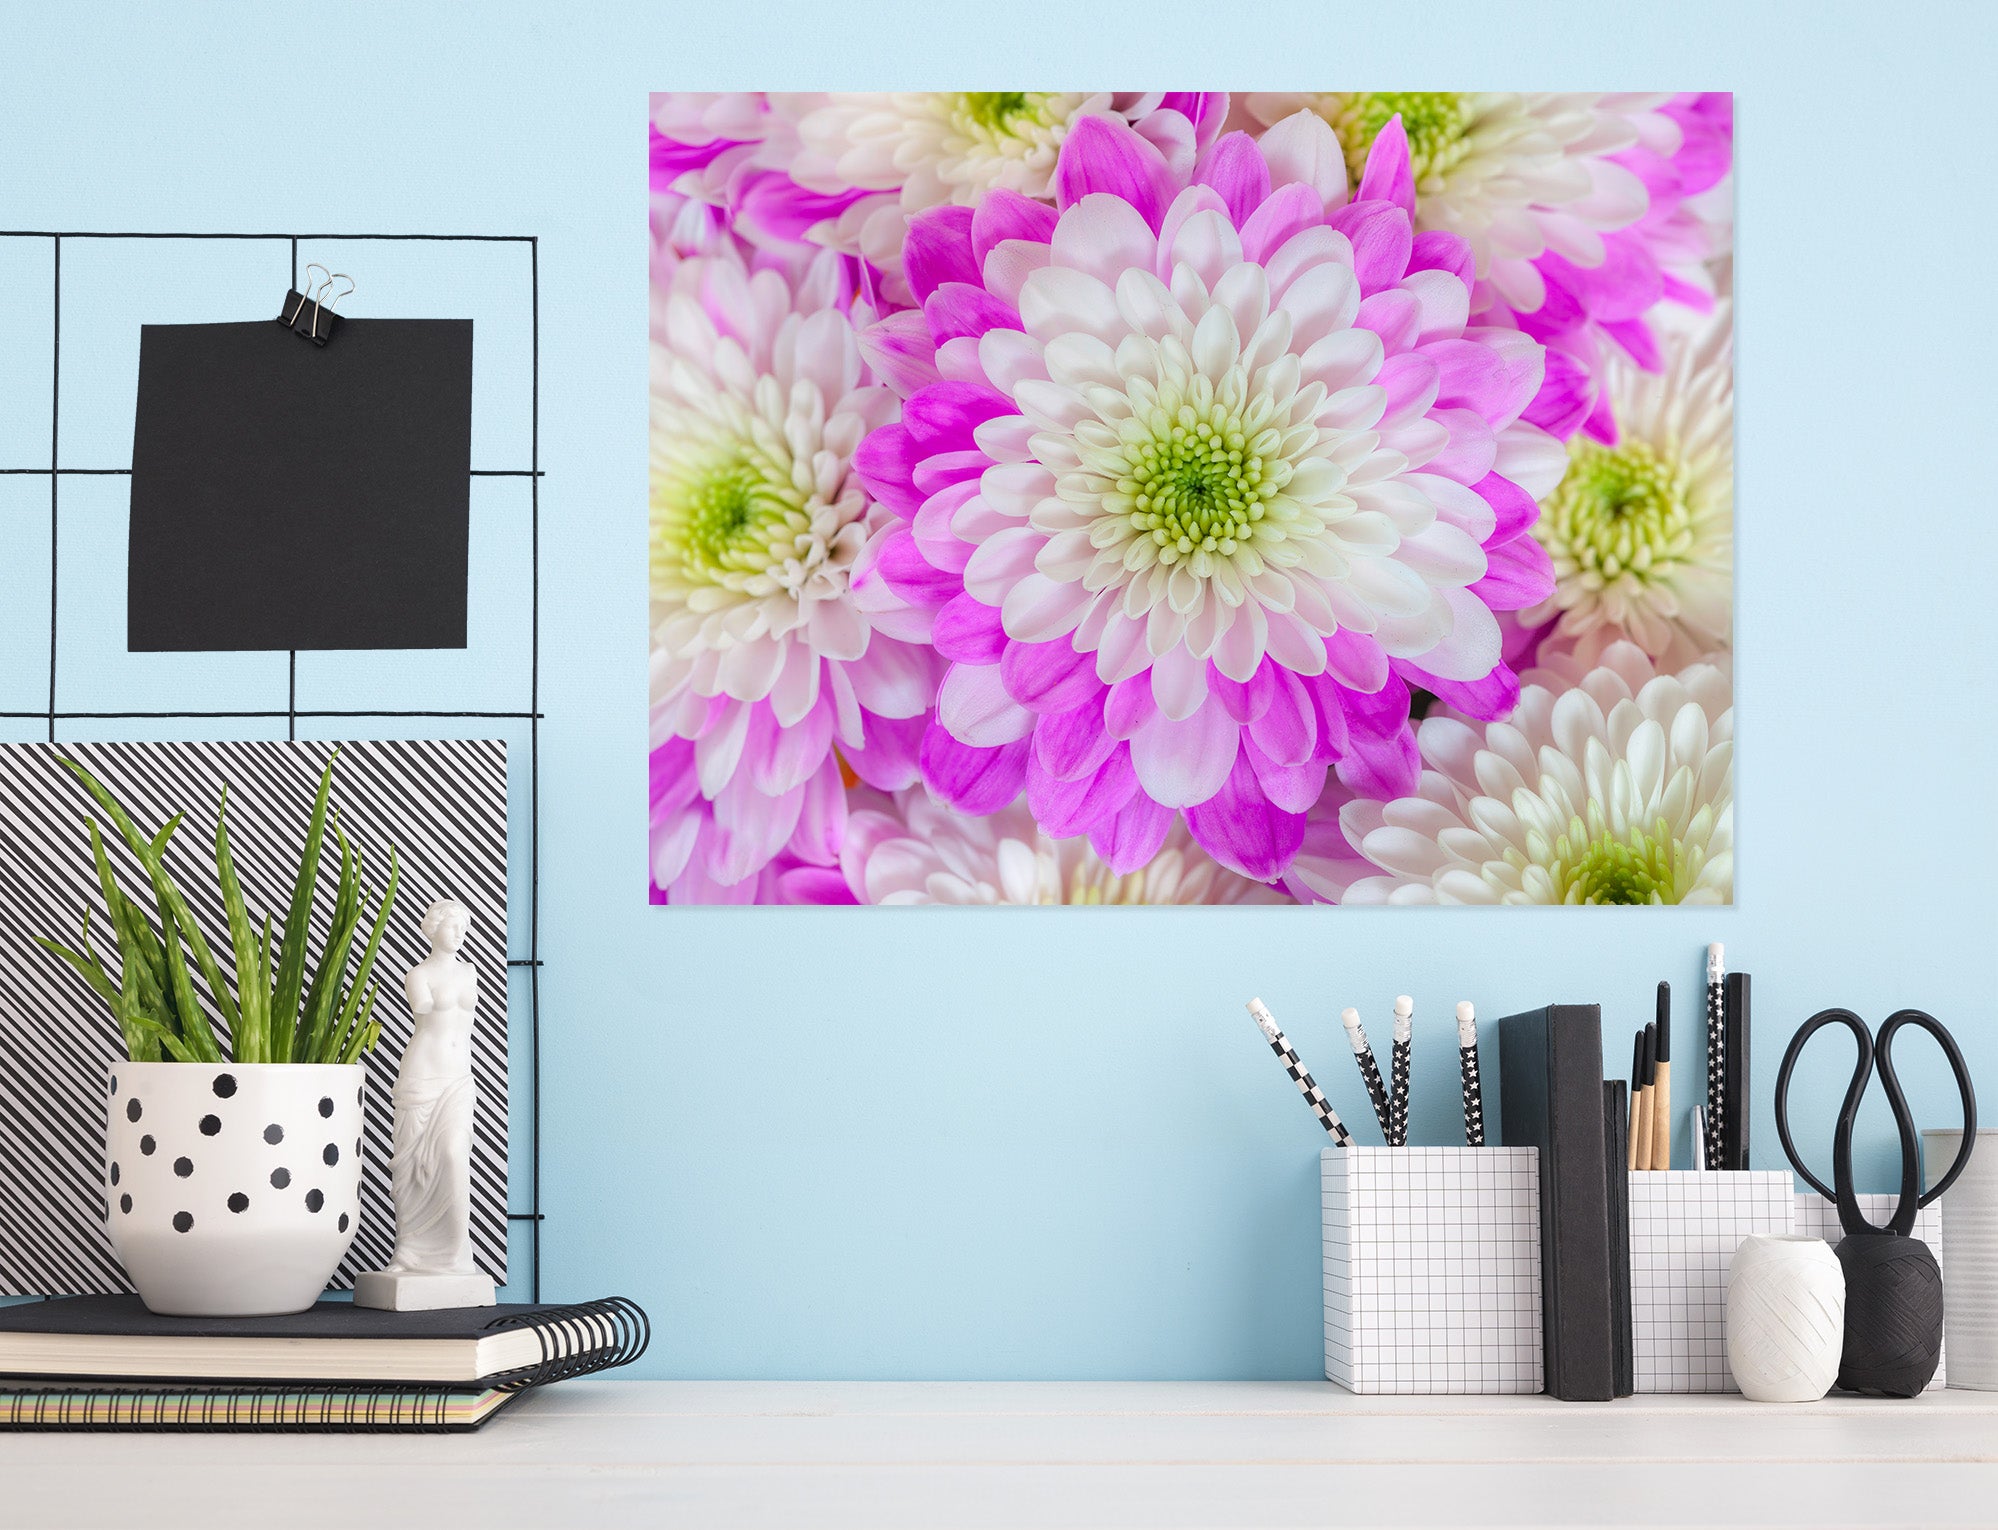 3D White Chrysanthemum 032 Assaf Frank Wall Sticker